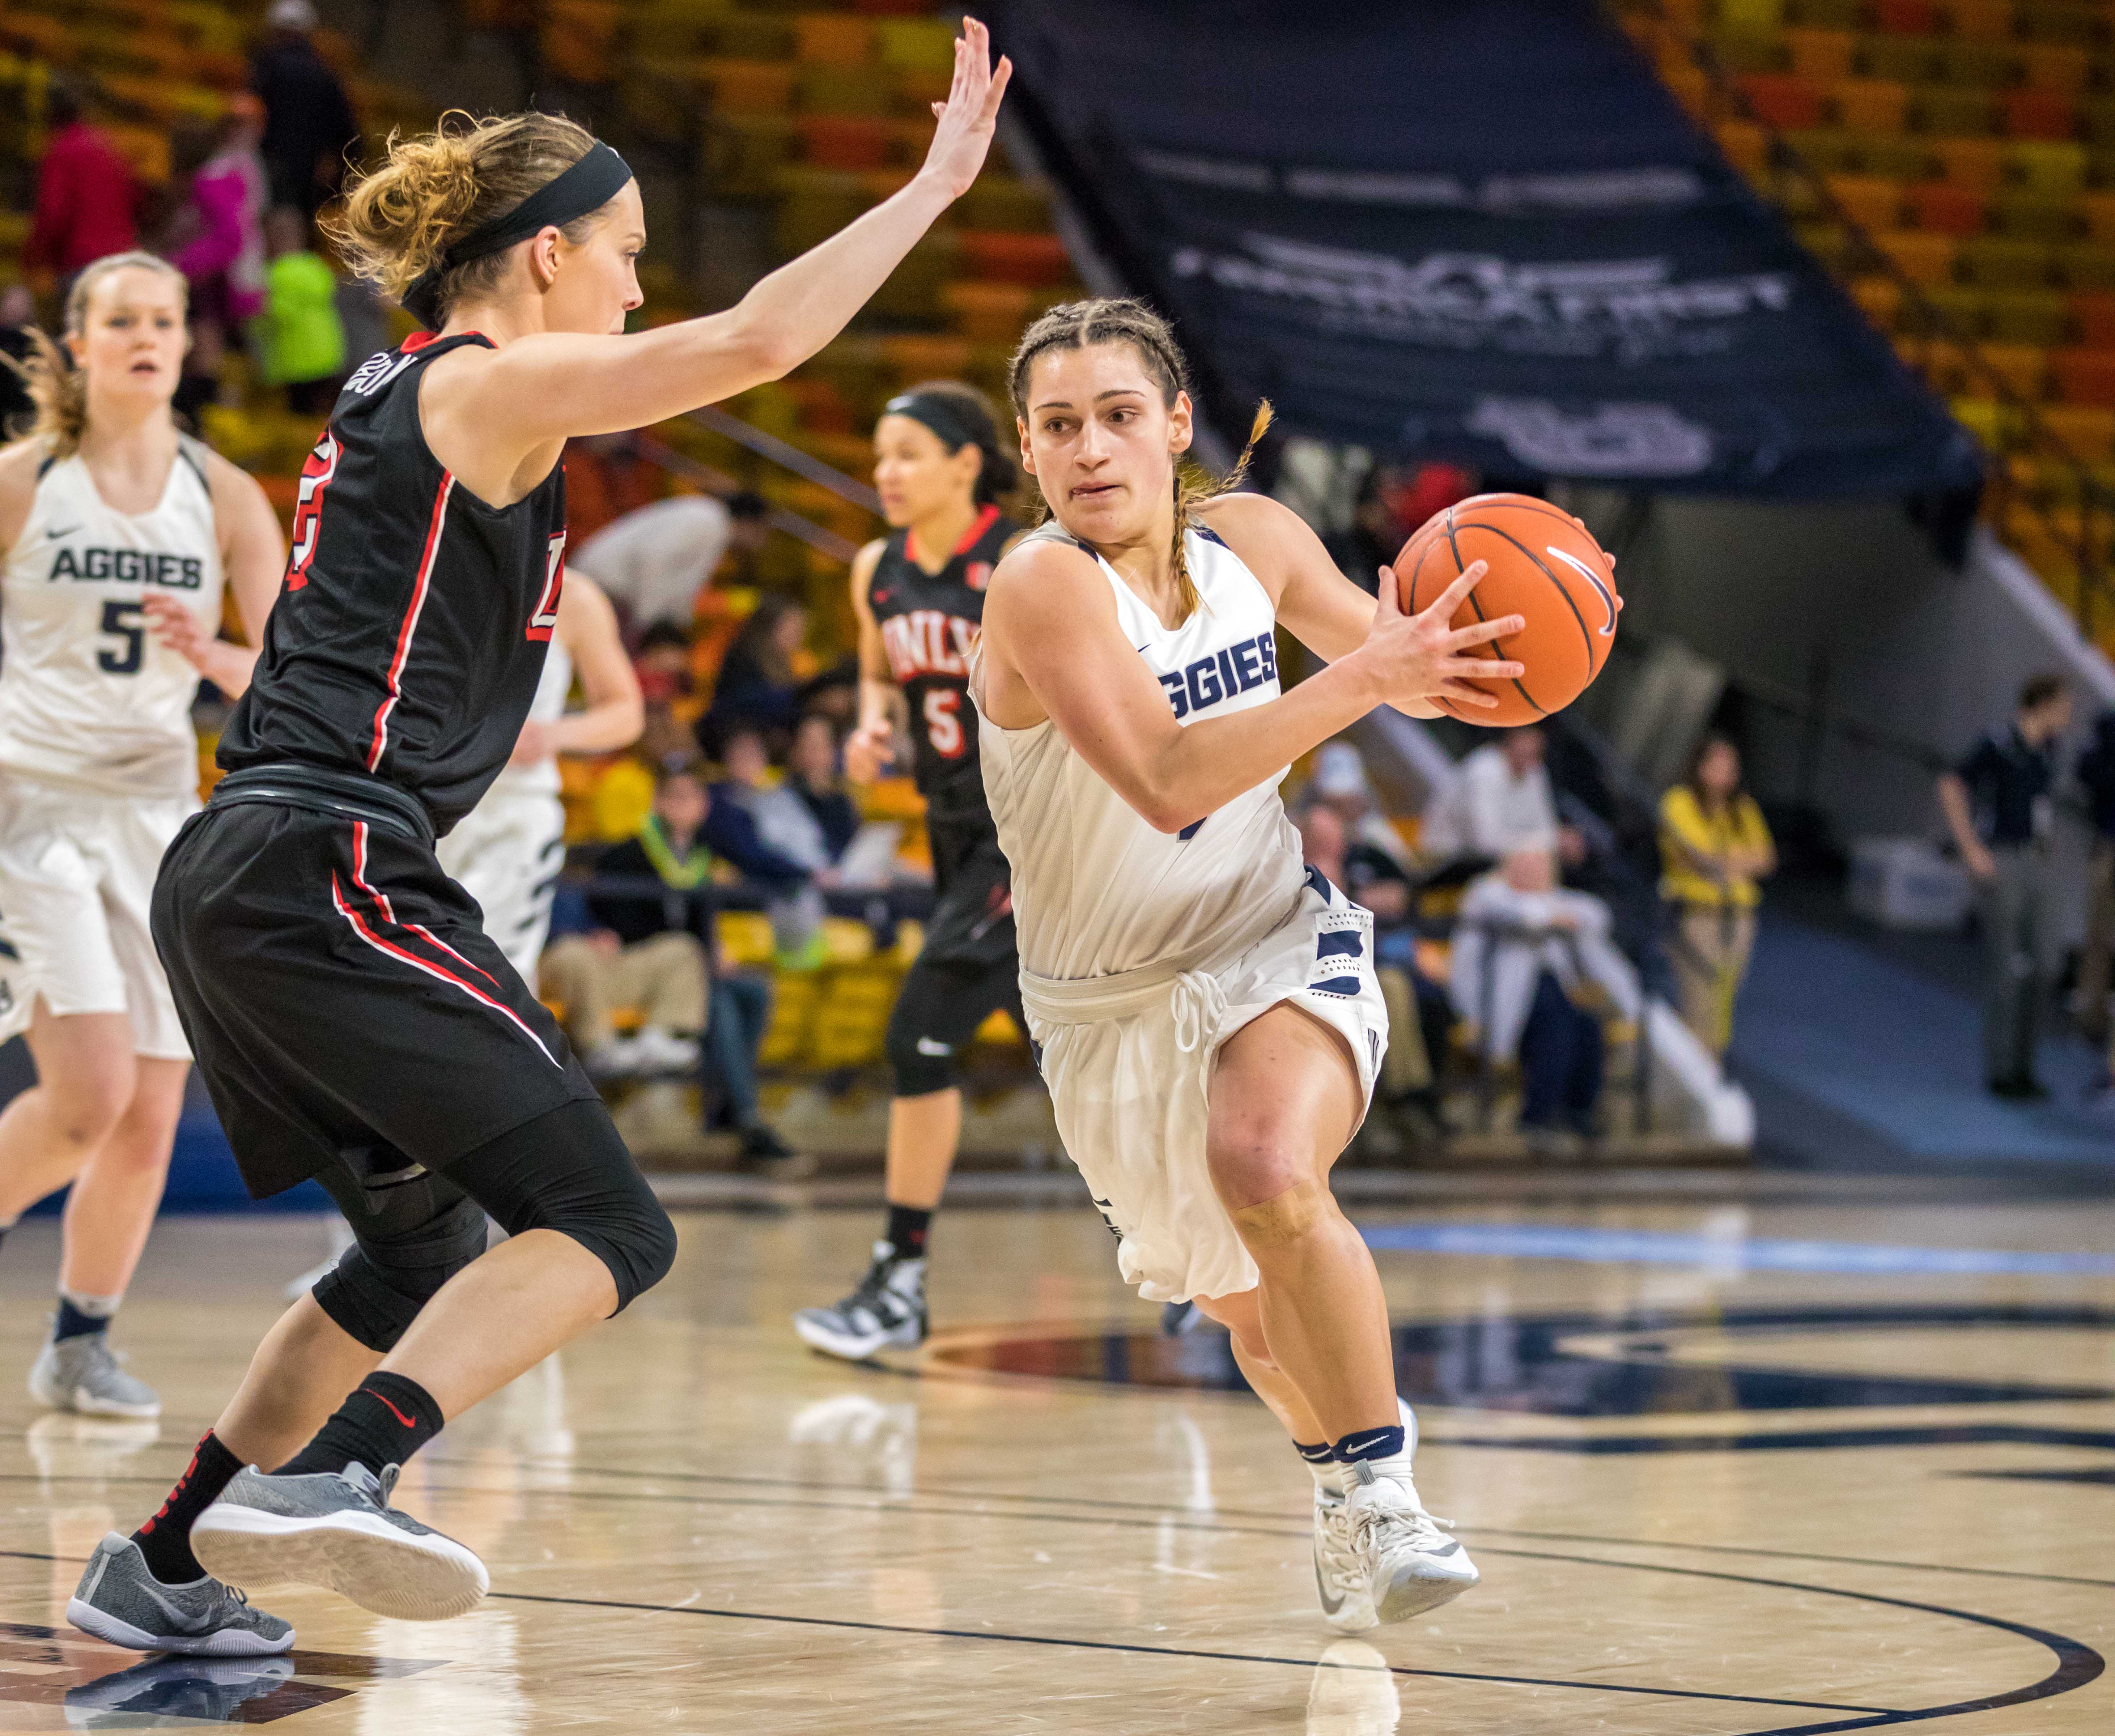 USU women's basketball defeats UNLV 58-49 in season finale - The Utah